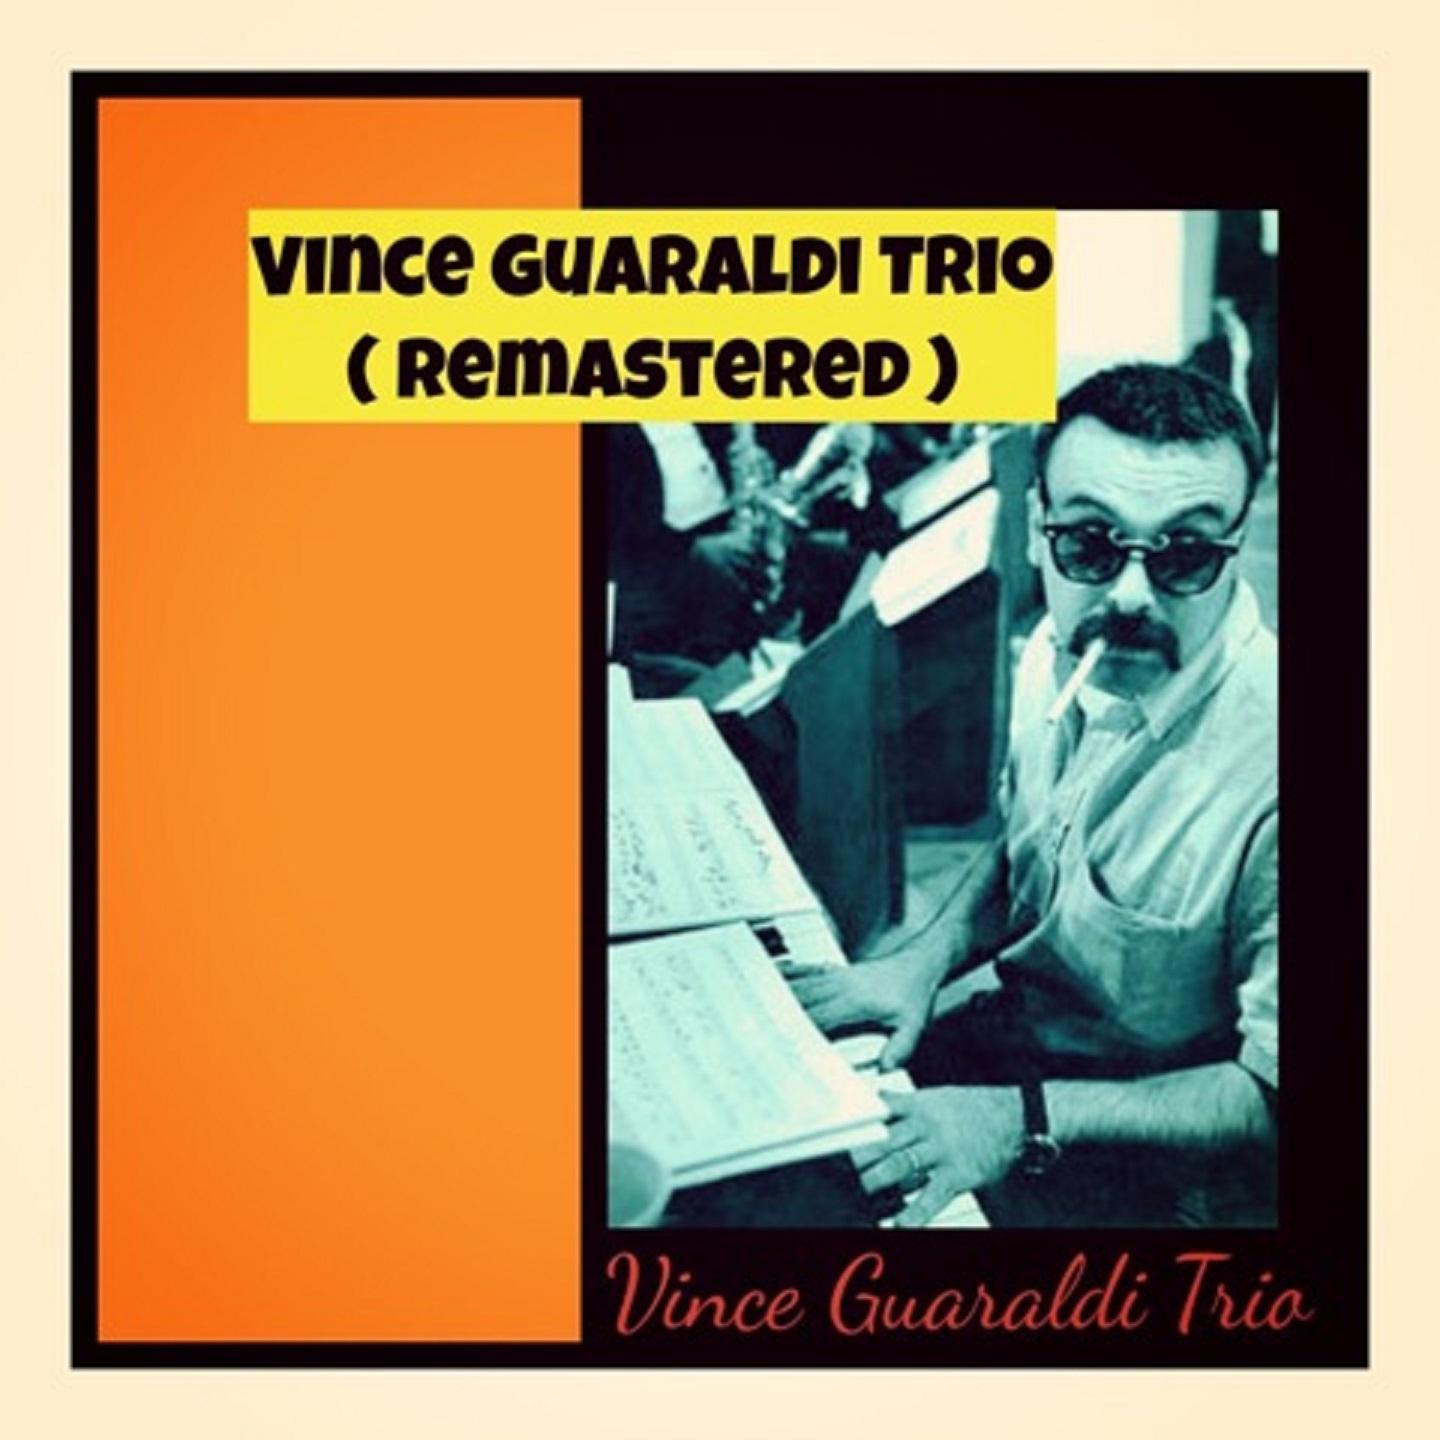 Vince Guaraldi Trio (Remastered)